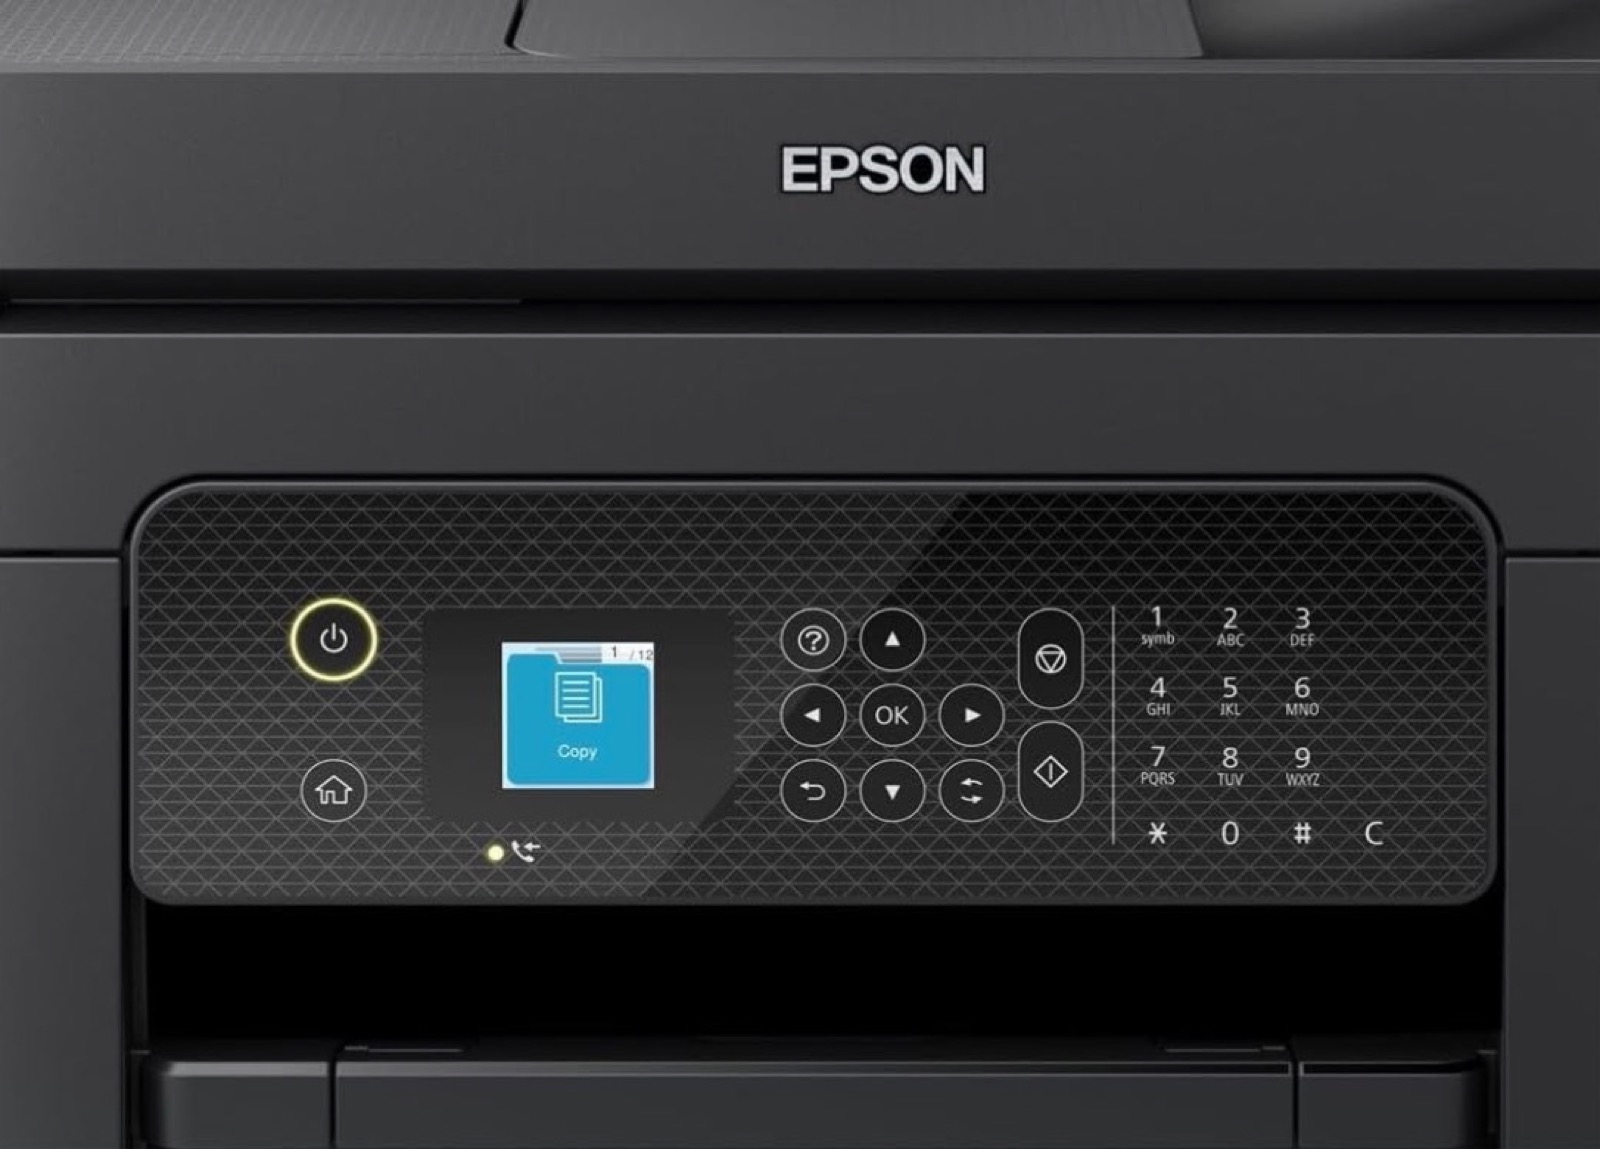 Epson Workforce, la stampante A4 fronte-retro con AirPrint super economica